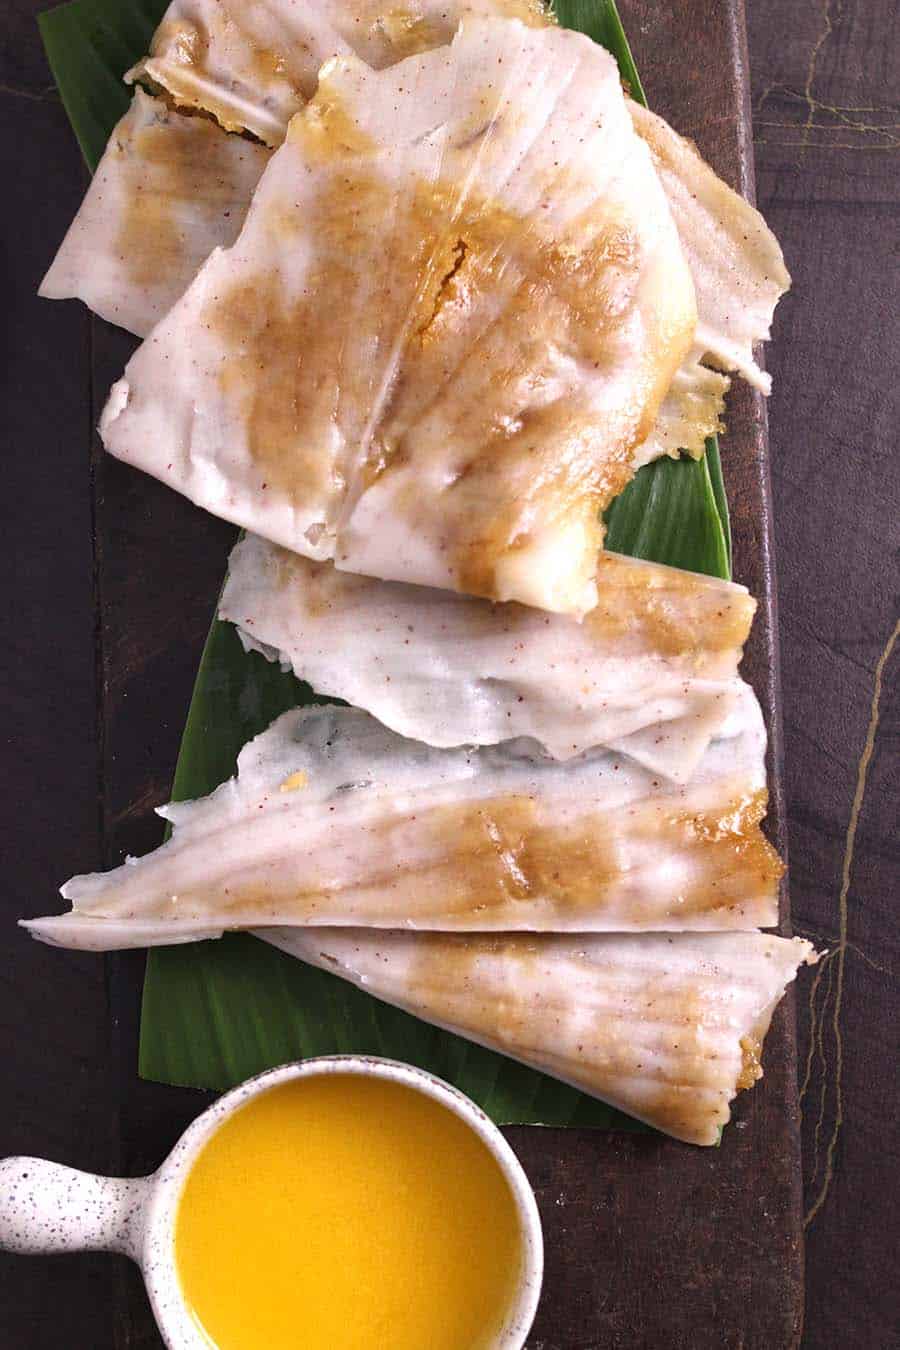 Patholi, Sihi Kadubu, Naga Panchami, ganesh Chaturthi sweets recipes, #indianrecipes #konkanirecipes 